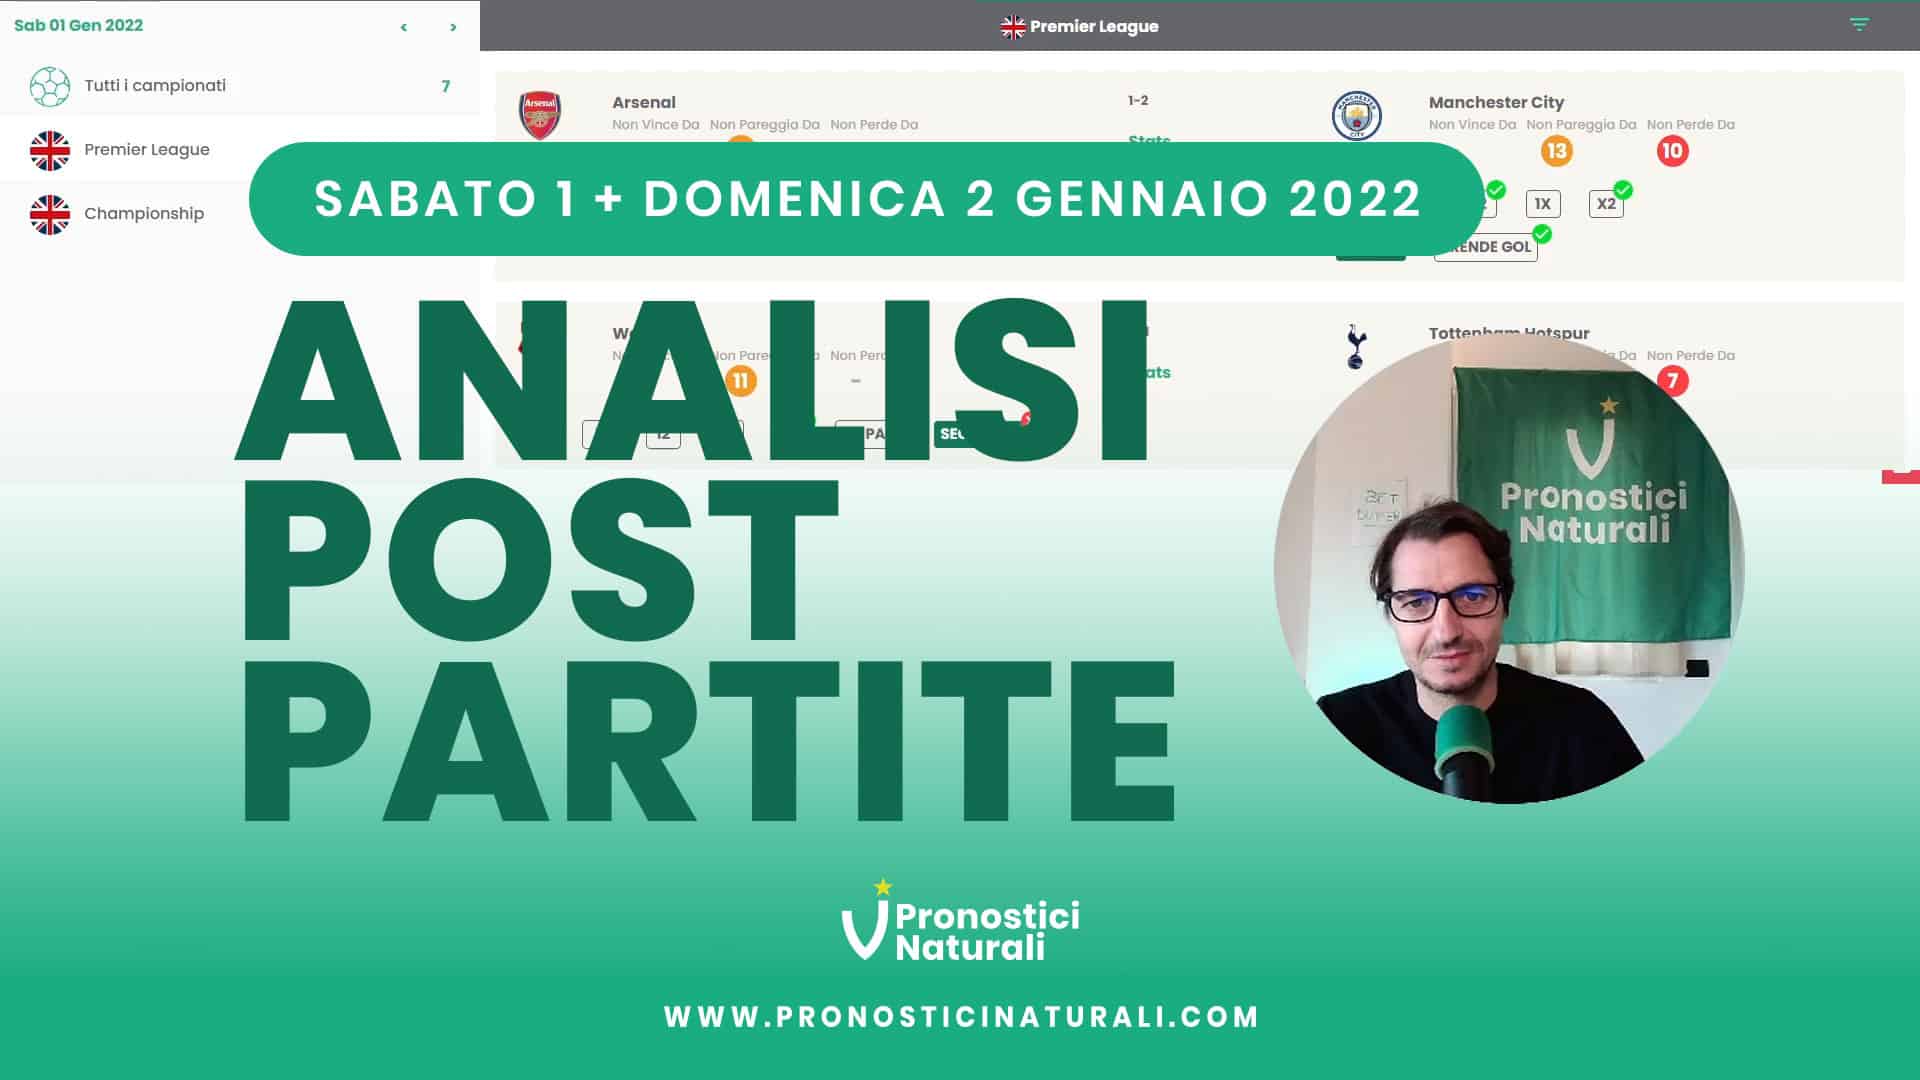 Pronostici Naturali Video Analisi Scommesse Betting Calcio Analisi Post Partite Sabato 1 Domenica 2 Gennaio 2022